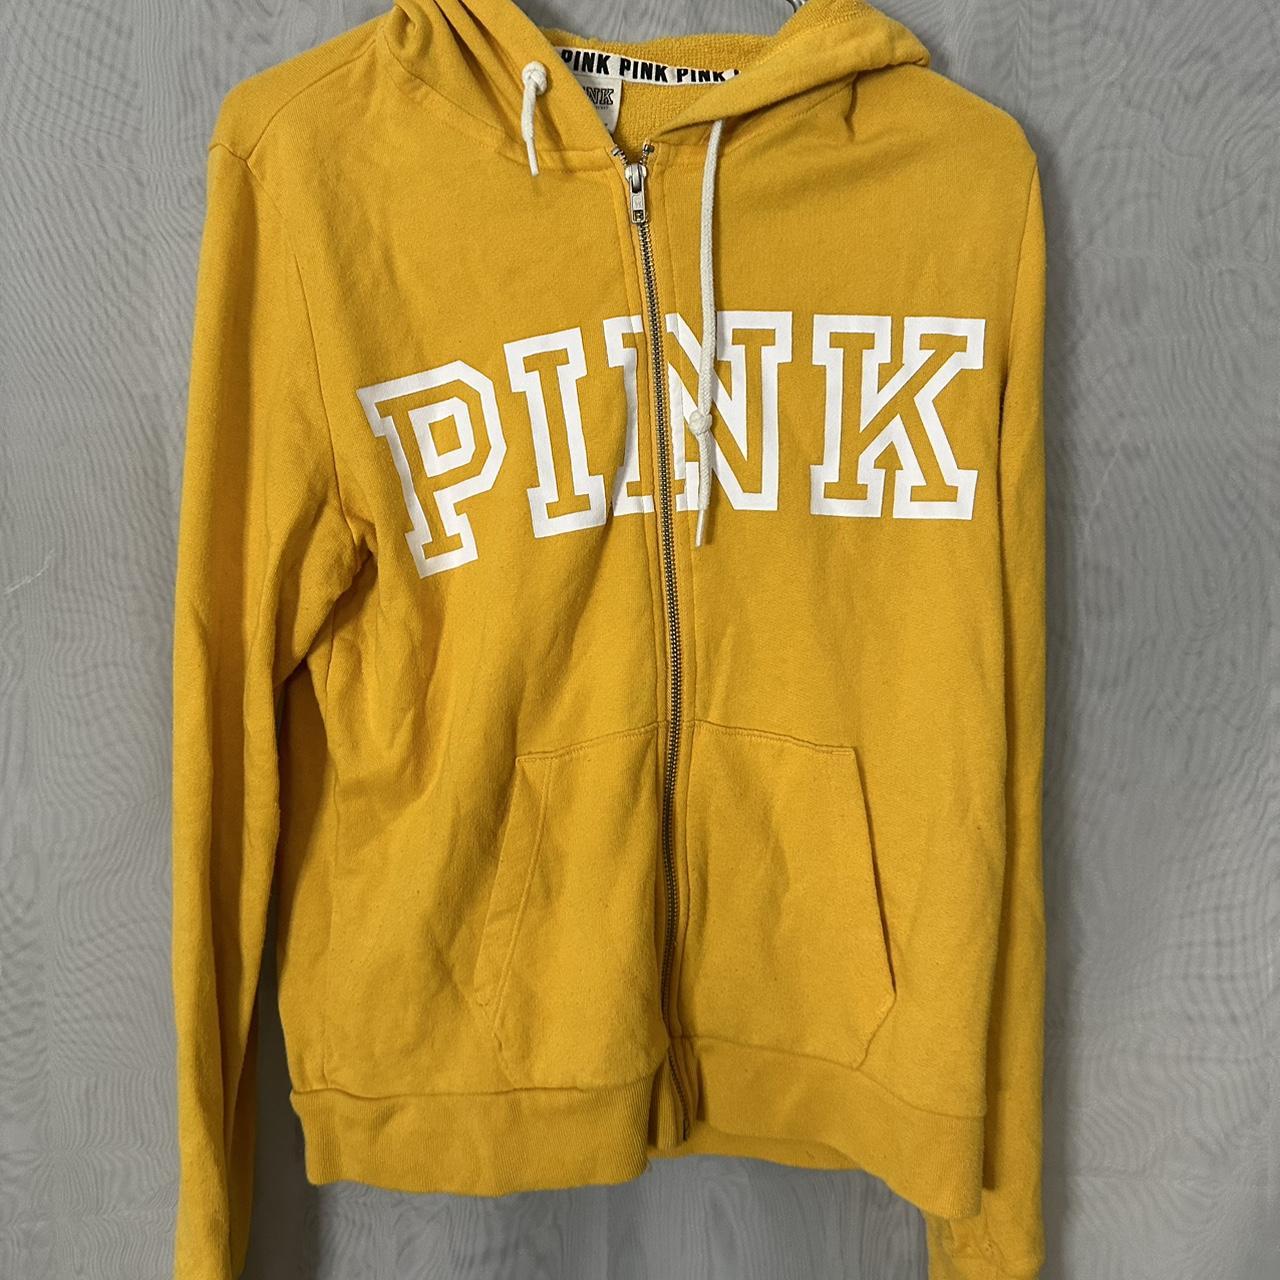 PINK by Victoria’s Secret Hoodie bundle! 3 hoodies.